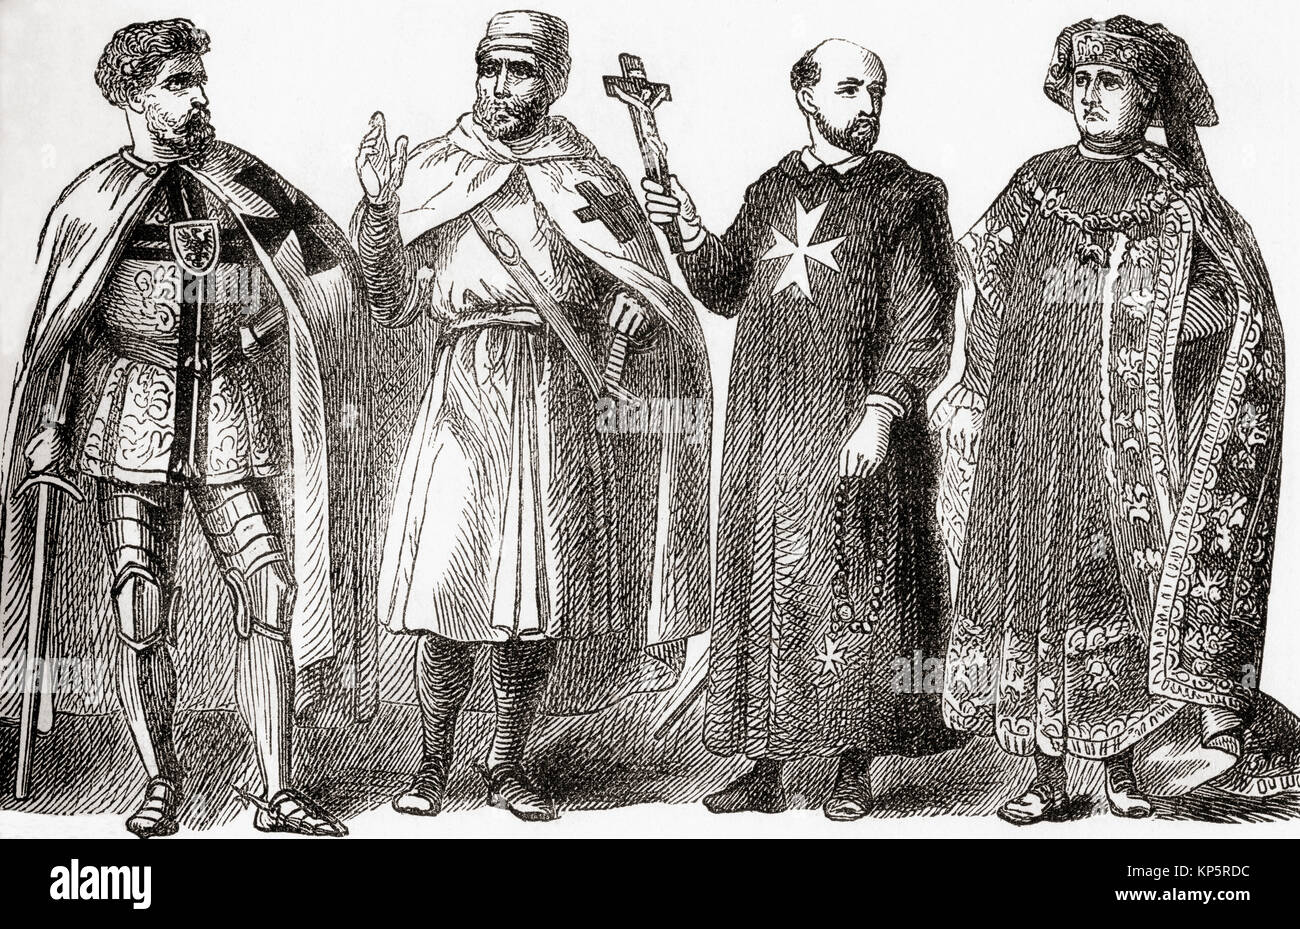 Da sinistra a destra, Teutonico cavaliere templare, cavaliere di San Giovanni e dell'ordine del vello d'oro. Da Ward e bloccare la storia illustrata del mondo, pubblicato c.1882. Foto Stock